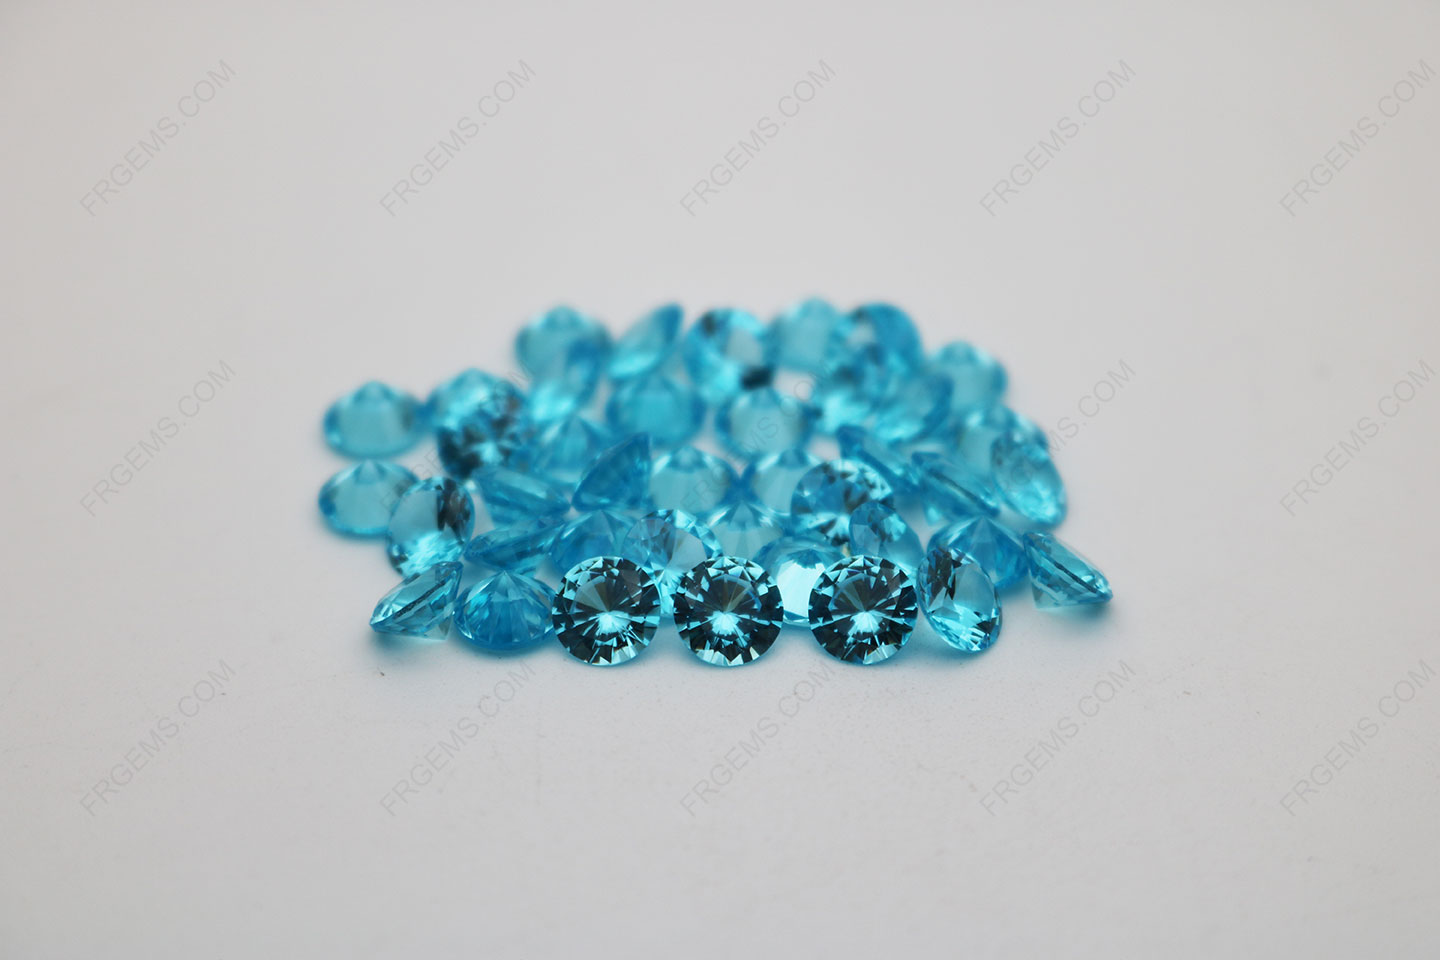 Cubic_Zirconia_Aquamarine_Round_Diamond_faceted_cut_6.5mm_stones_China_Supplier_IMG_2058